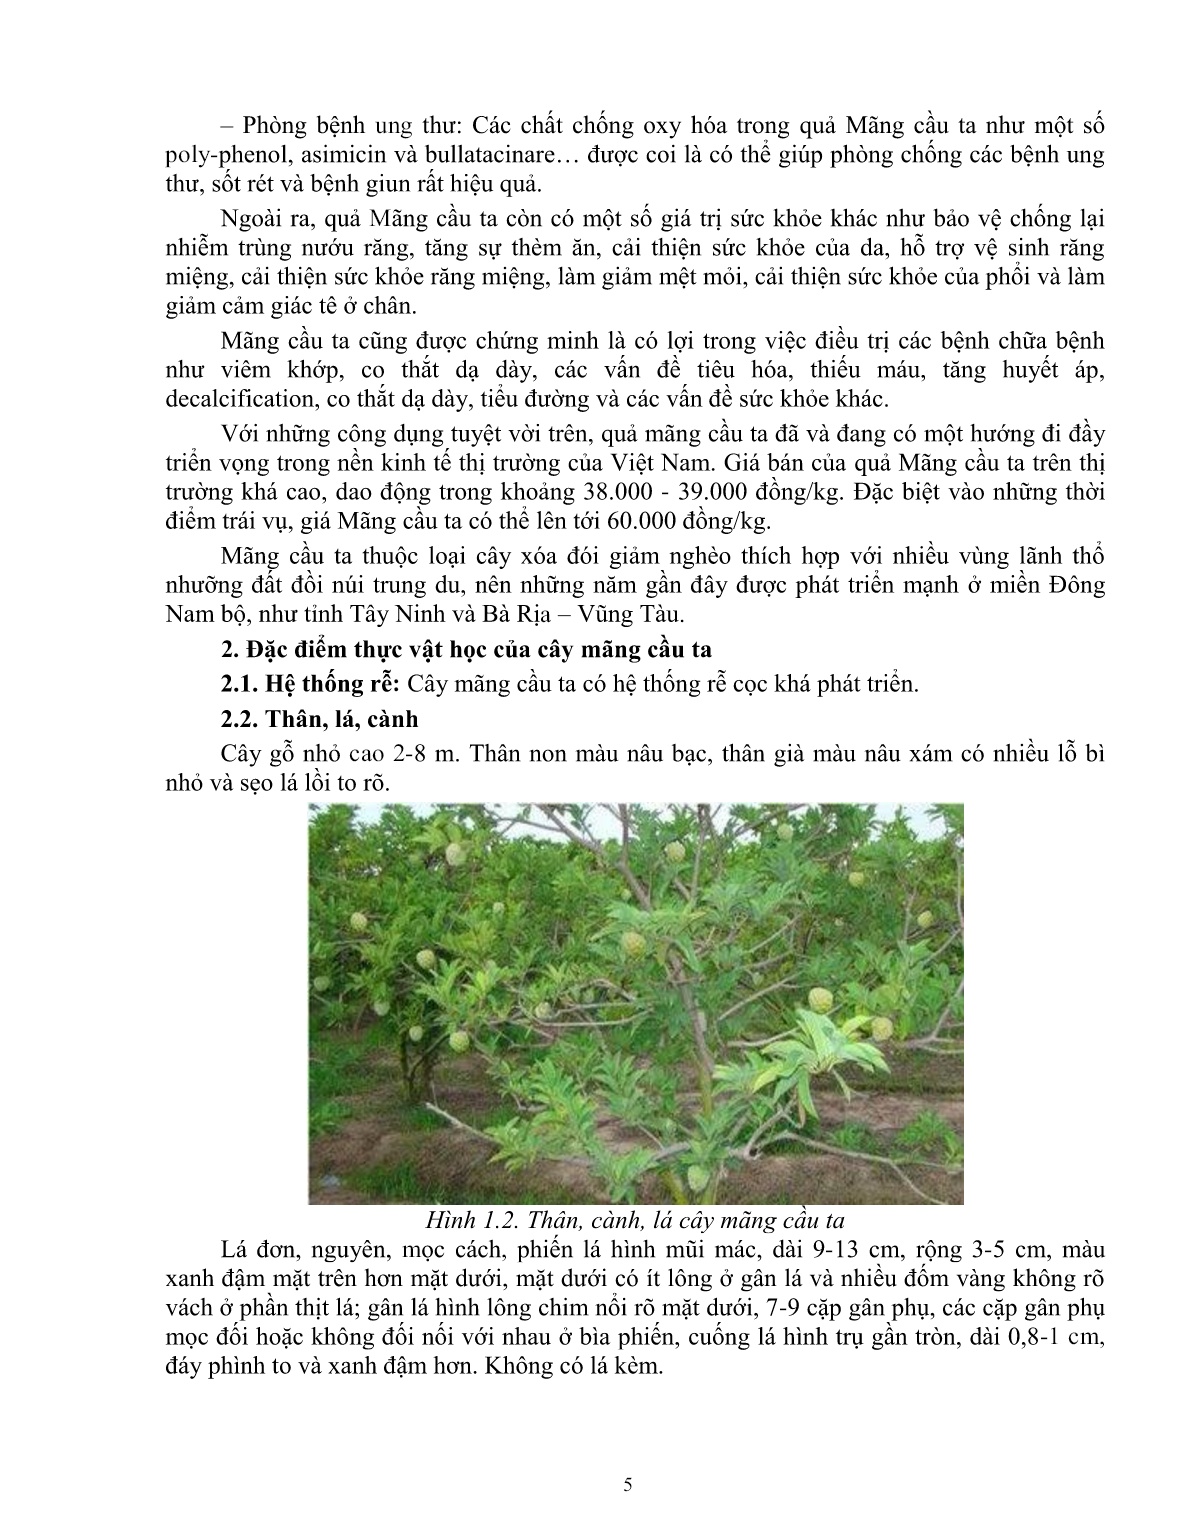 Giáo trình mô đun Nhân giống cây mãng cầu ta (Trình độ: Đào tạo dưới 3 tháng) trang 6